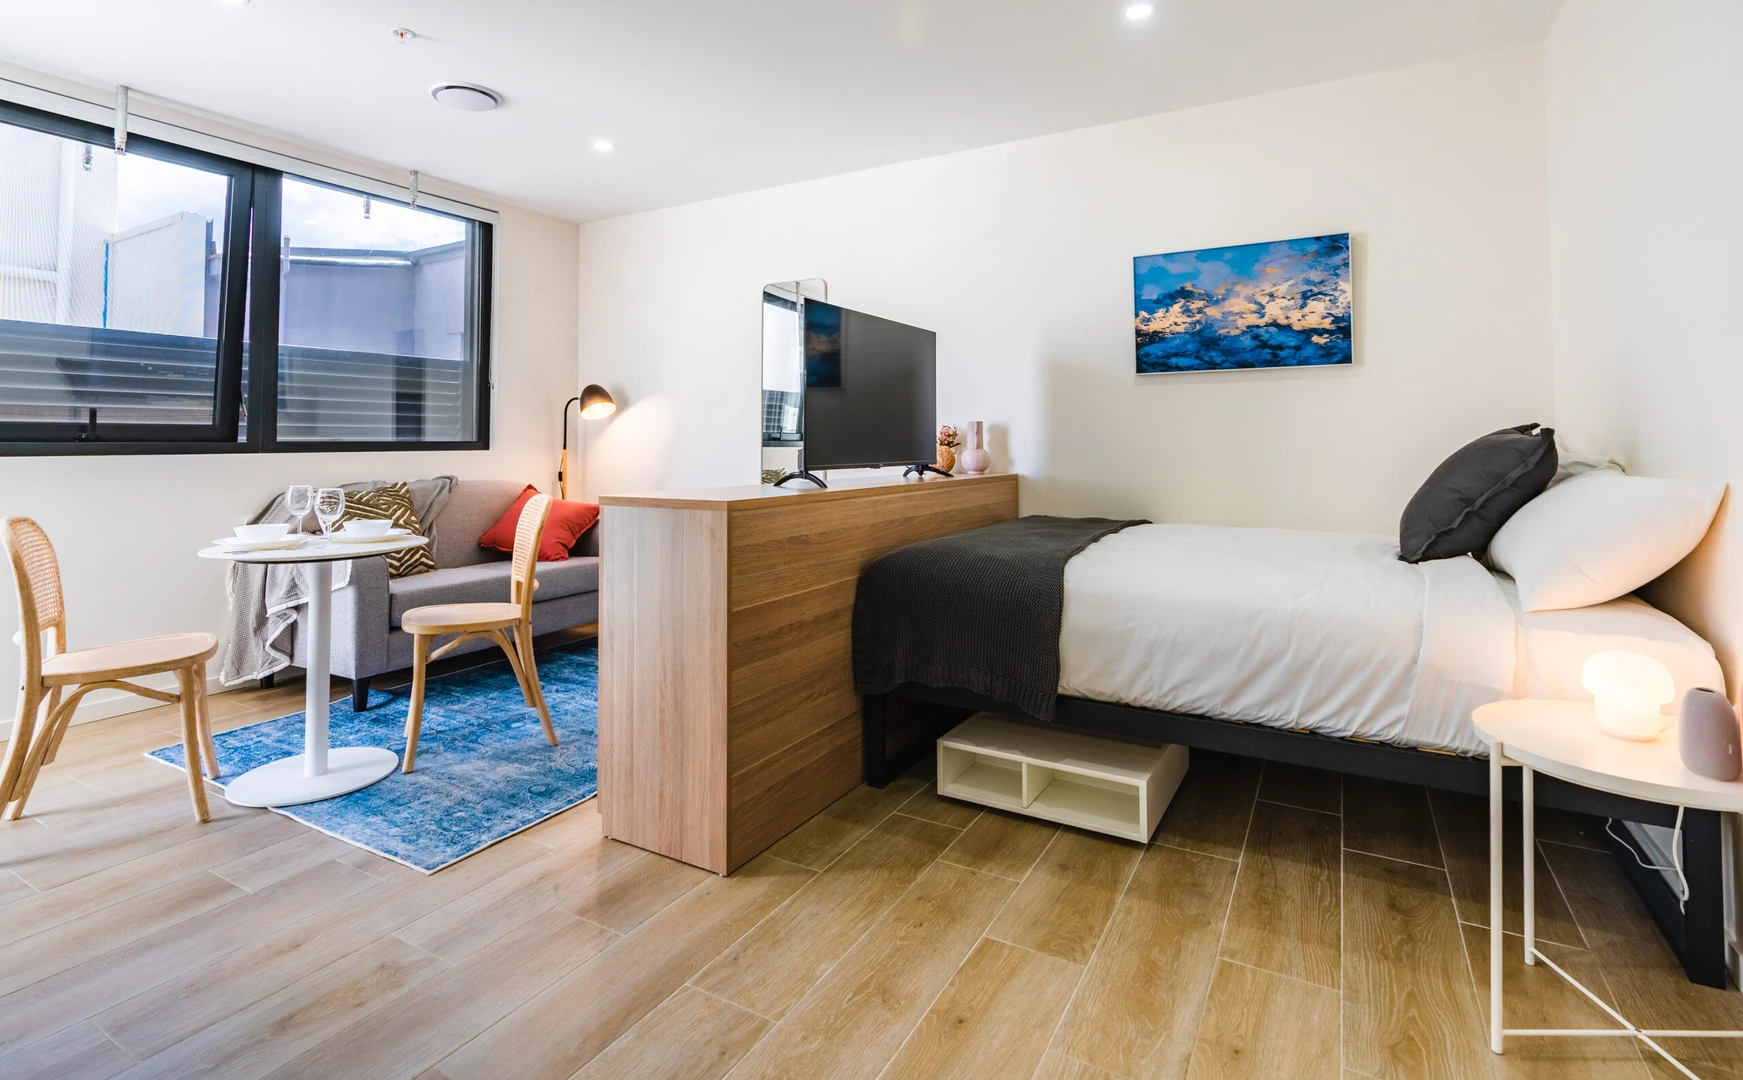 Alquiler de habitaciones por meses en Sídney